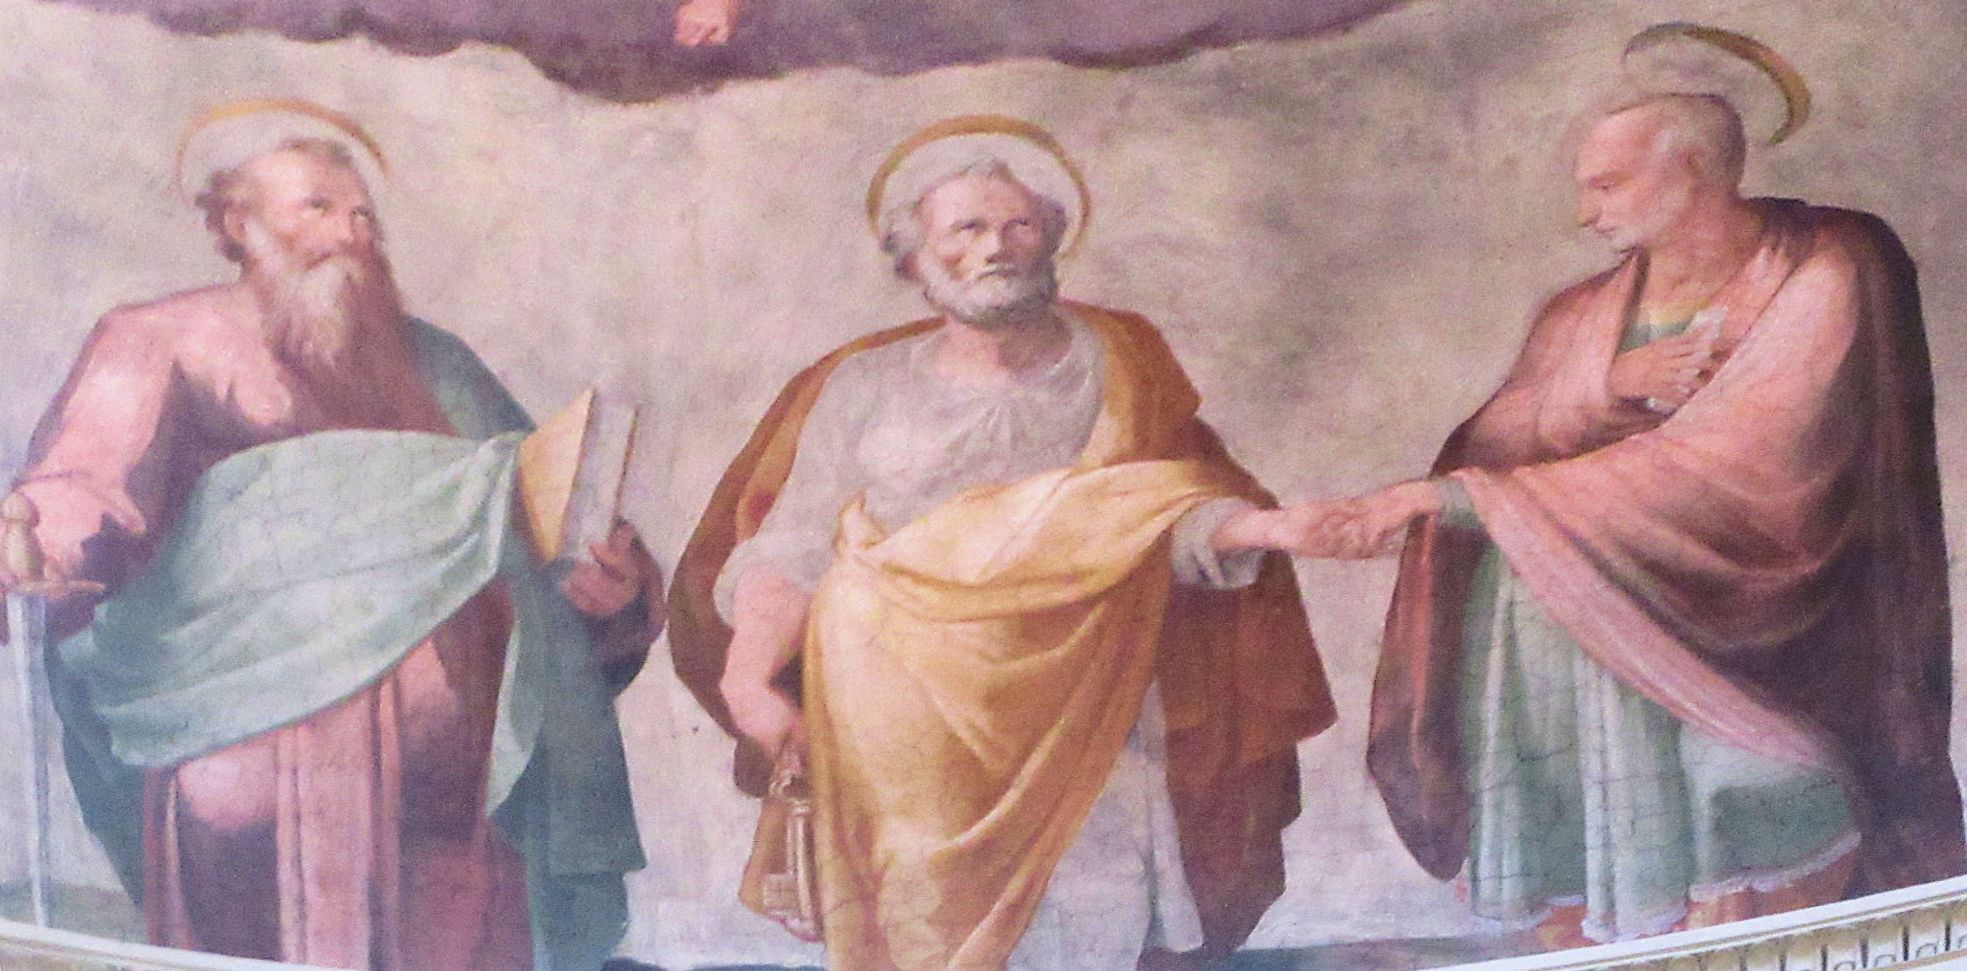 Altarbild: die Verherrlichung von Pudentiana und Petrus, in der Kirche Santa Pudenziana in Rom